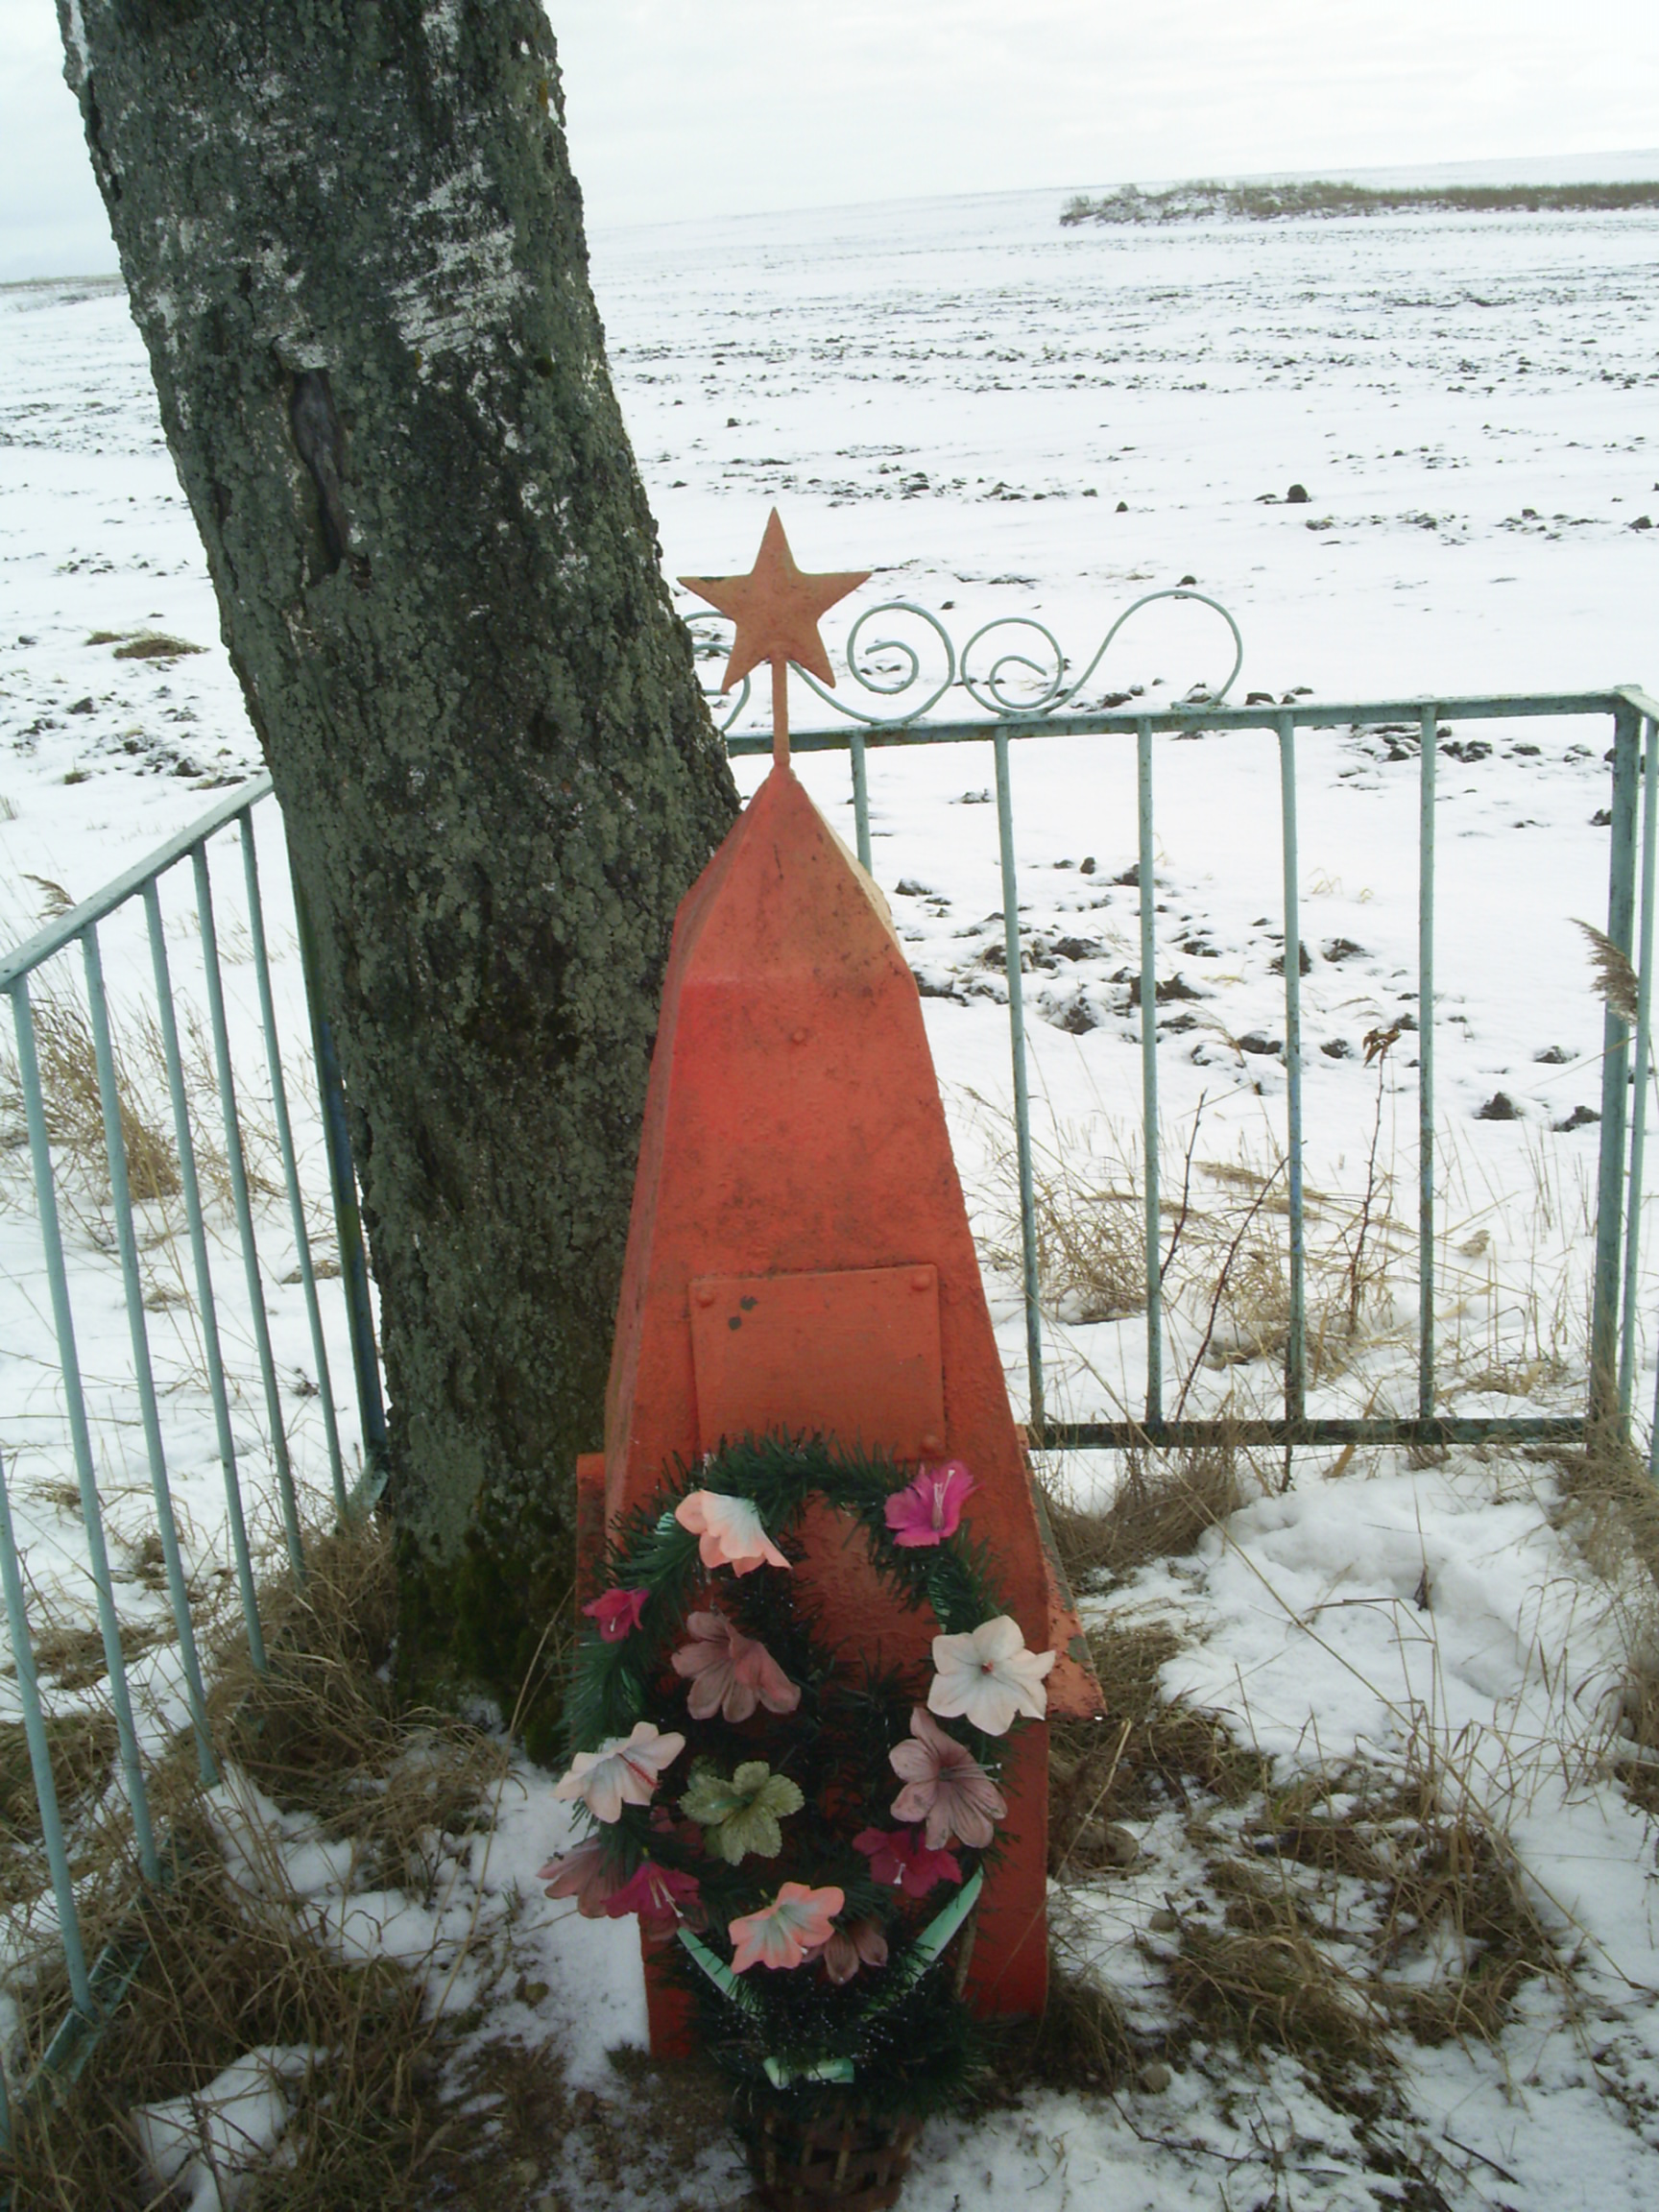 Индивидуальная могила Воинское захоронение №2300, расположенная в д. Комары, Витебский район, Витебская область